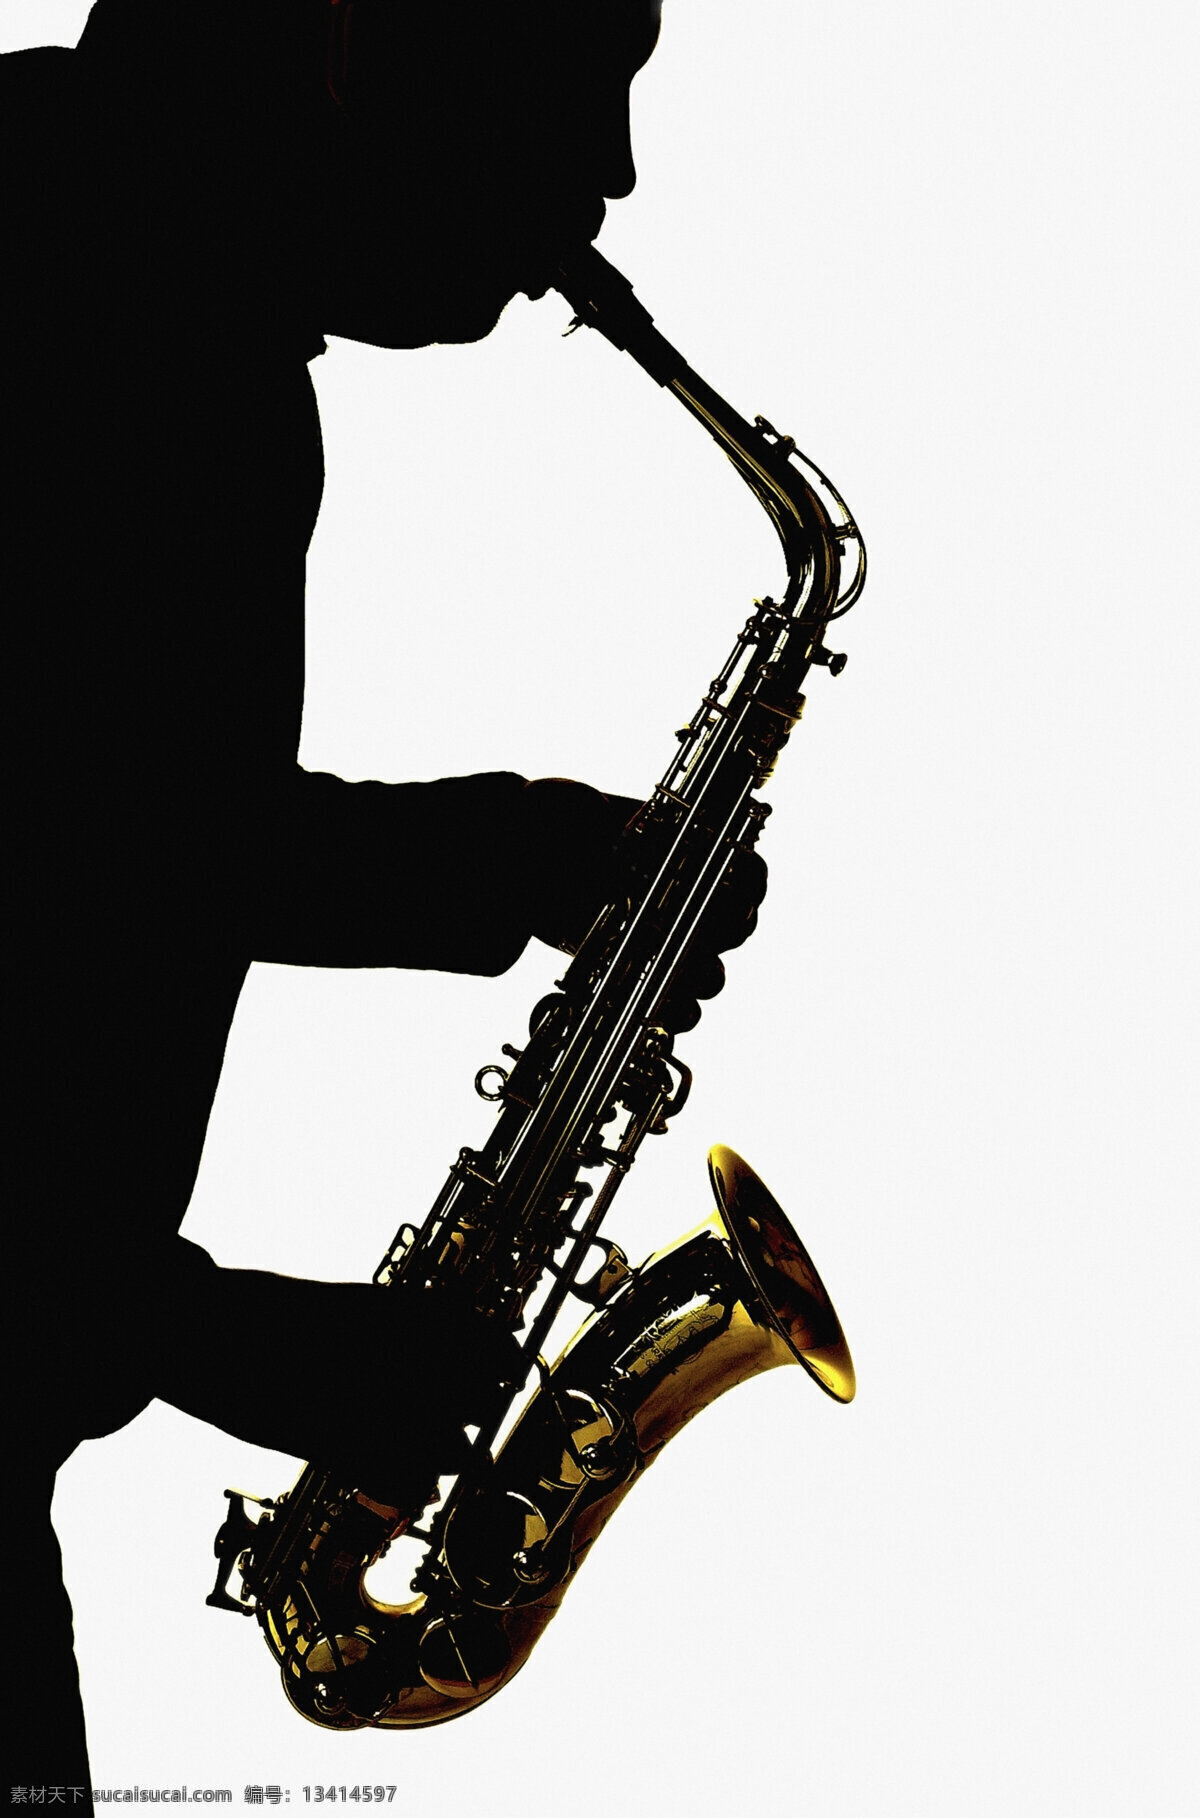 吹 萨克斯 乐器 西洋乐器 音乐 人物 人物剪影 影音娱乐 生活百科